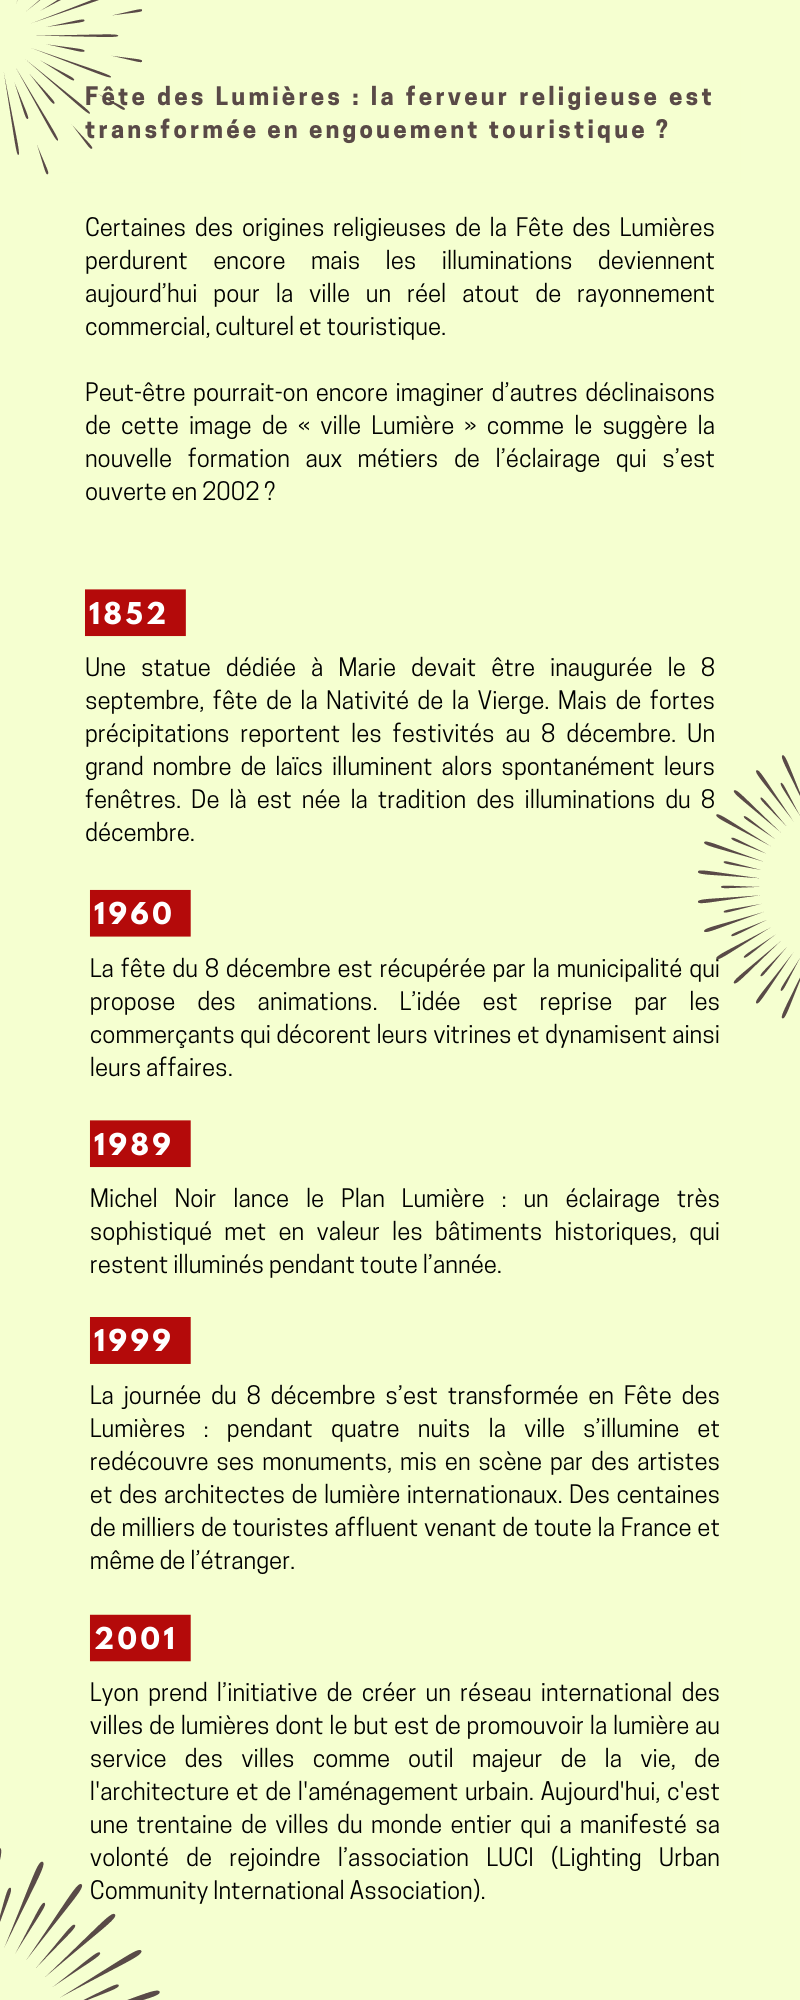 Chronologie sur le thème de la fête des lumières de 1852 à 2001